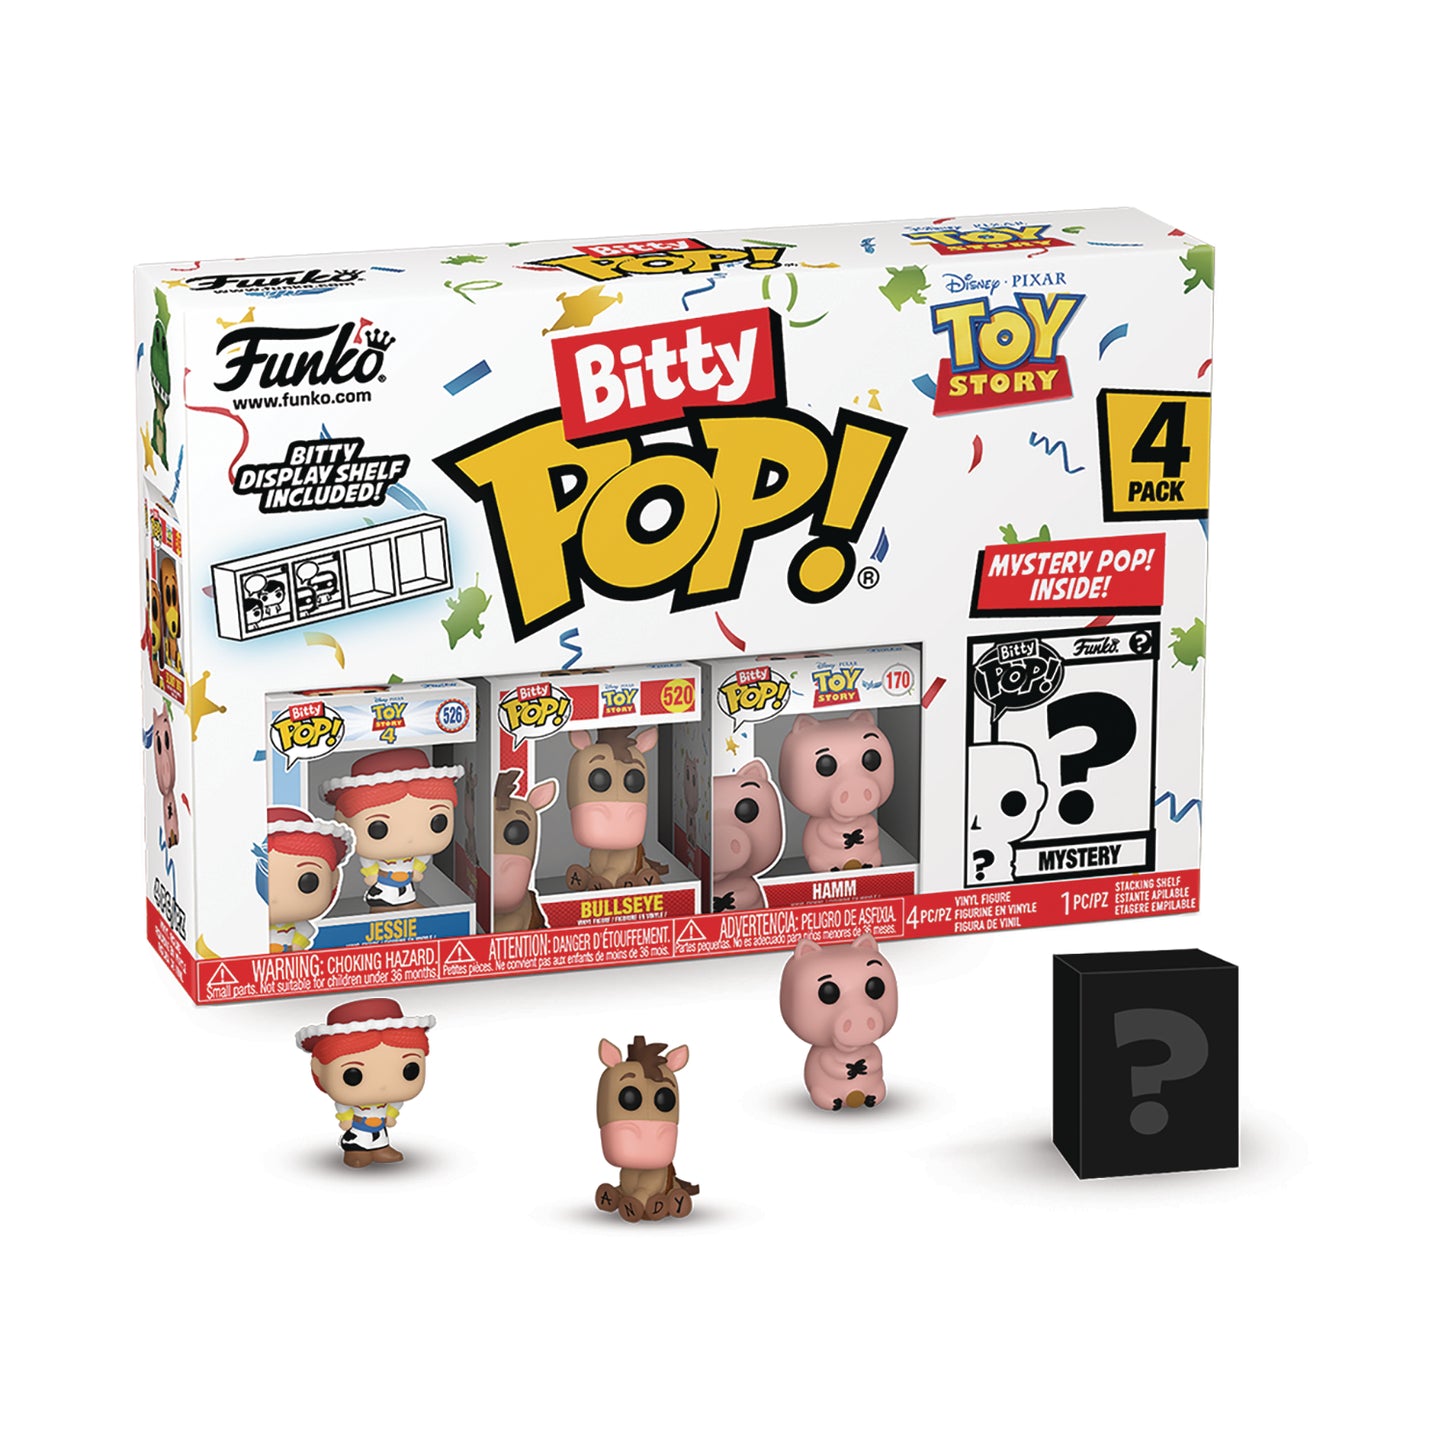 Bitty Pop Toy Story Jessie 4pk Figure